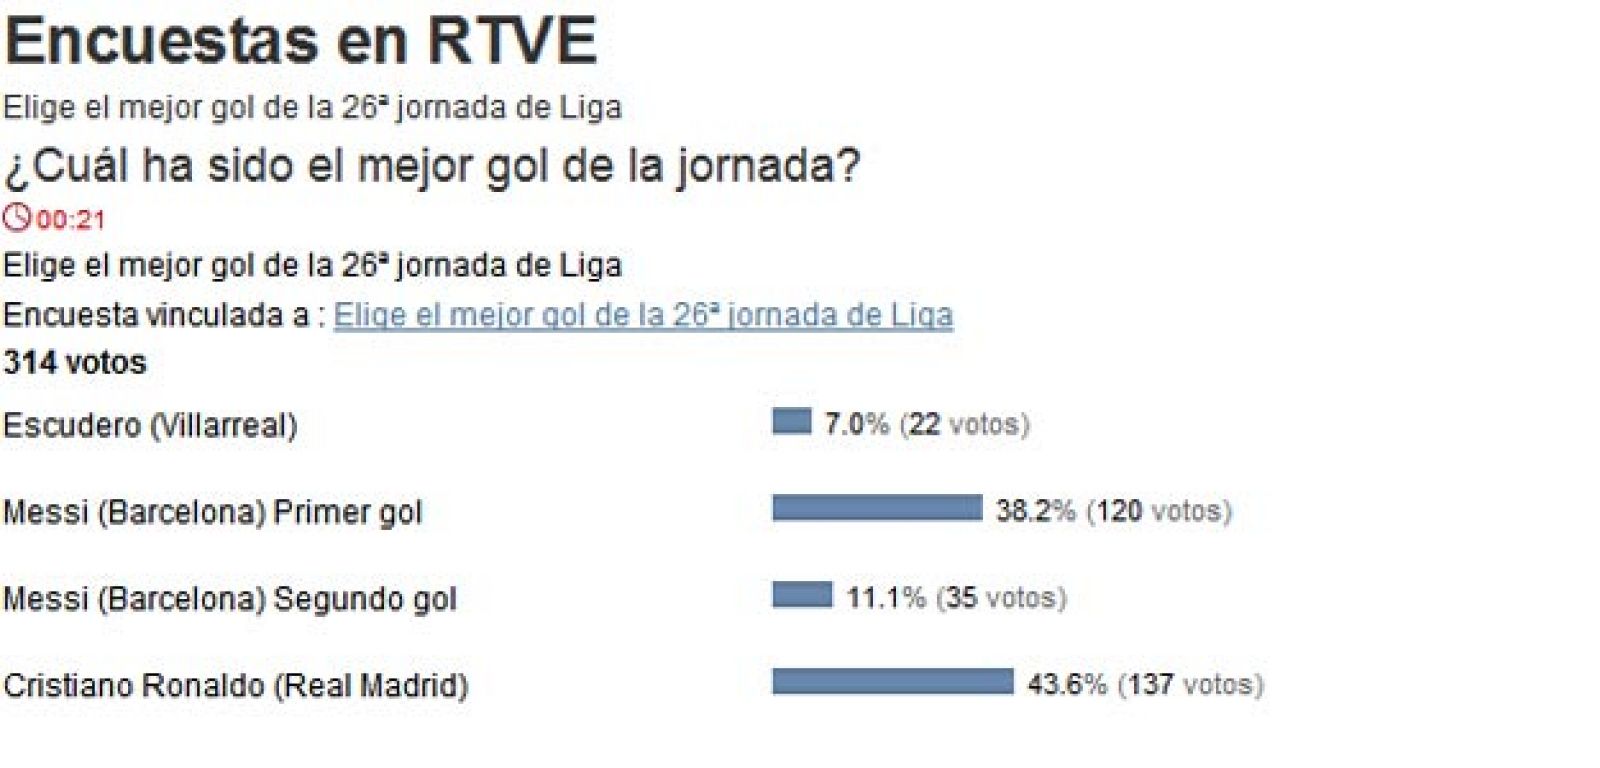 El gol de Cristiano Ronaldo (43,6% de los votos) ha ganado a los dos de Messi.